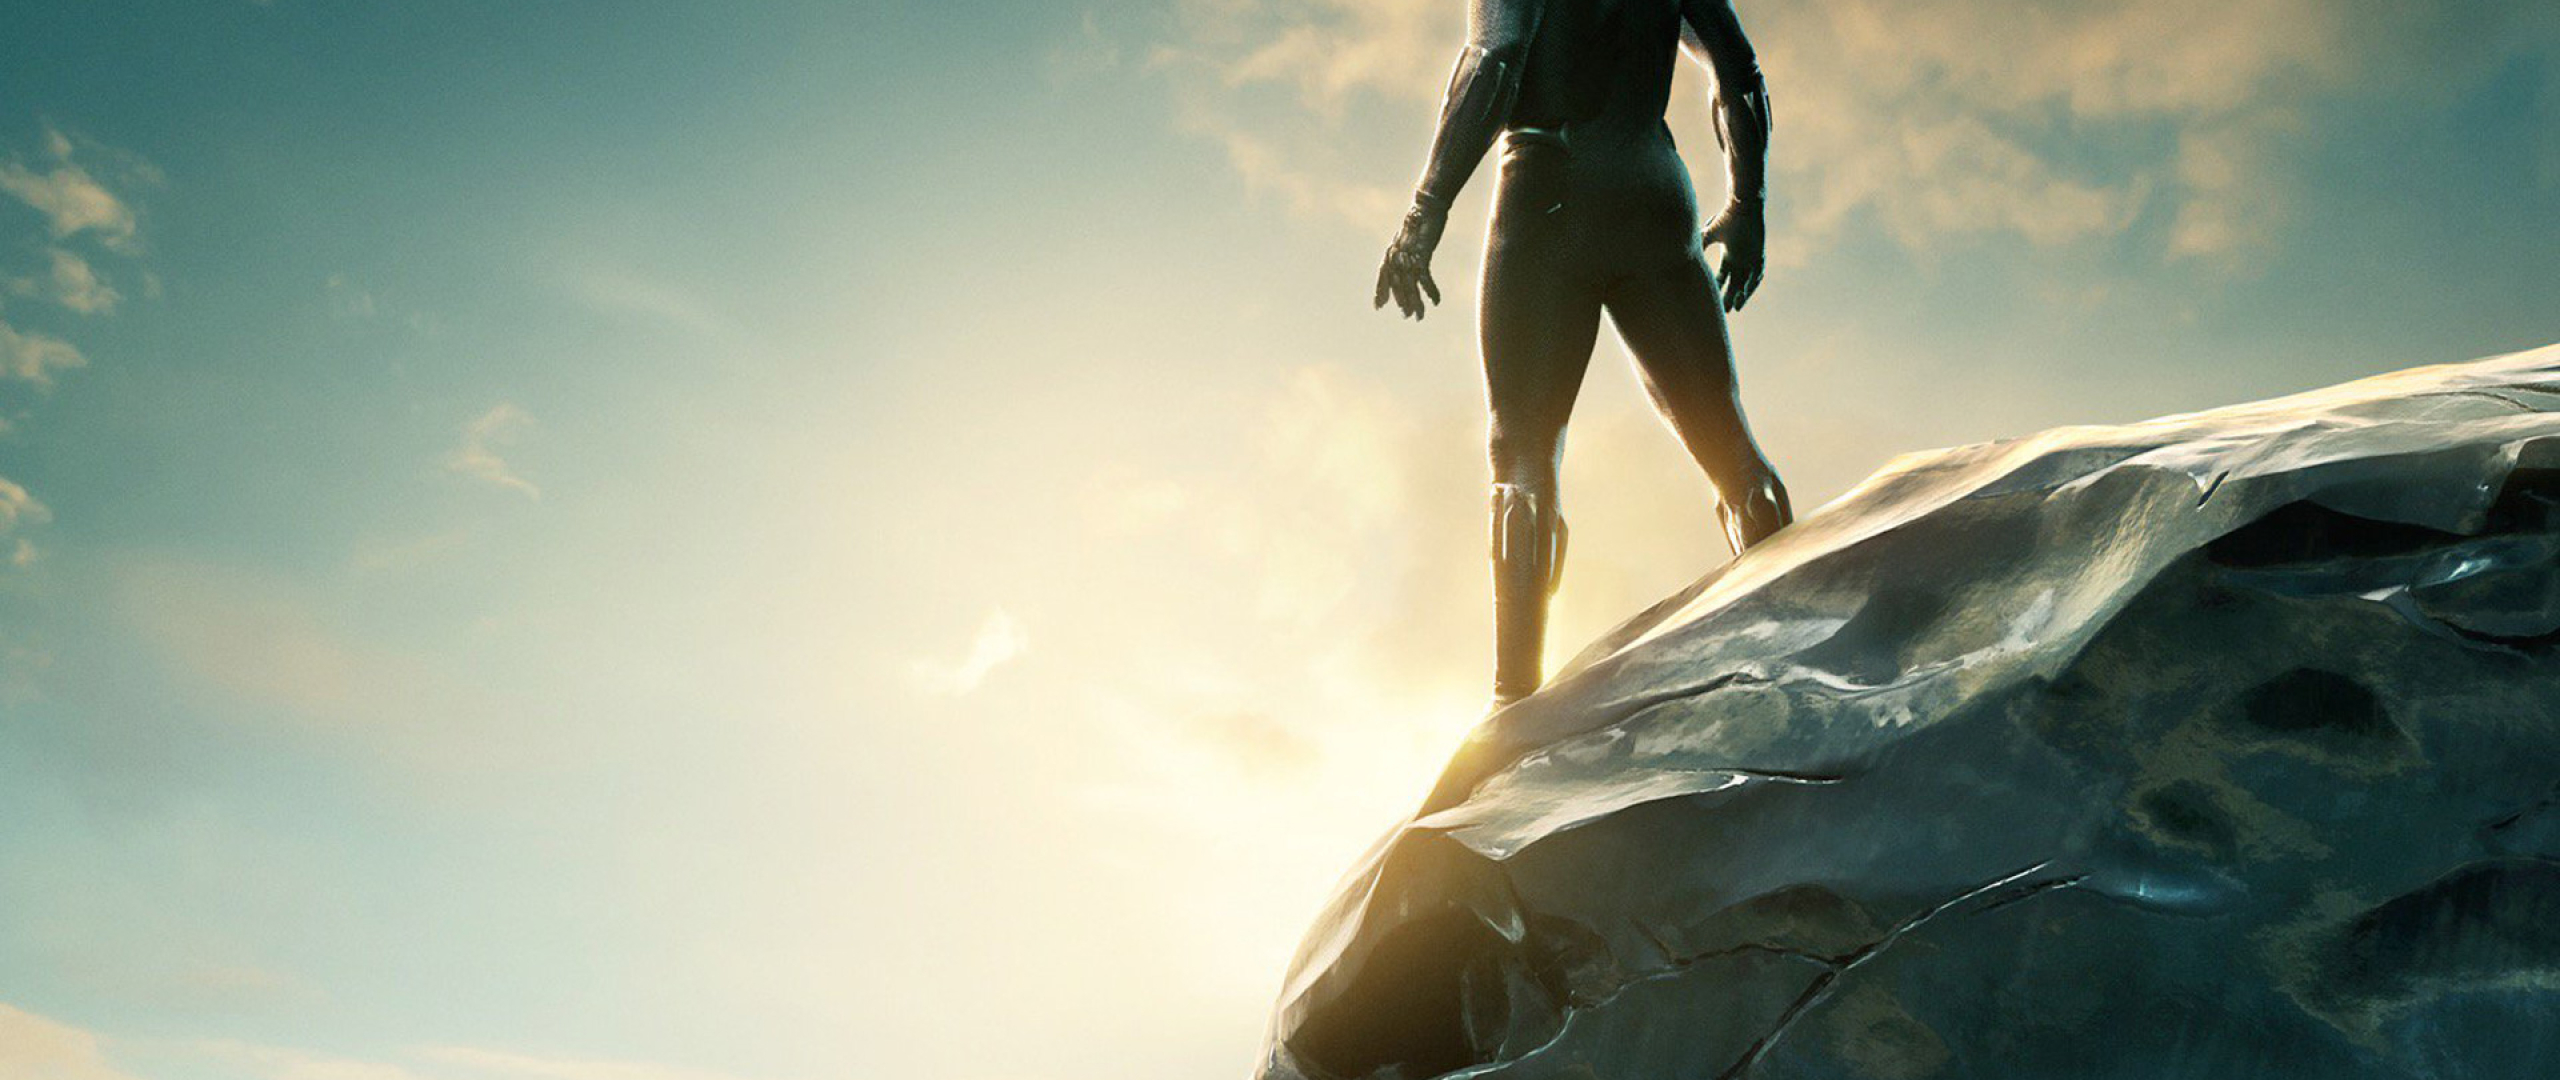 Black Panther 2018 Movie Still Full HD Wallpaper